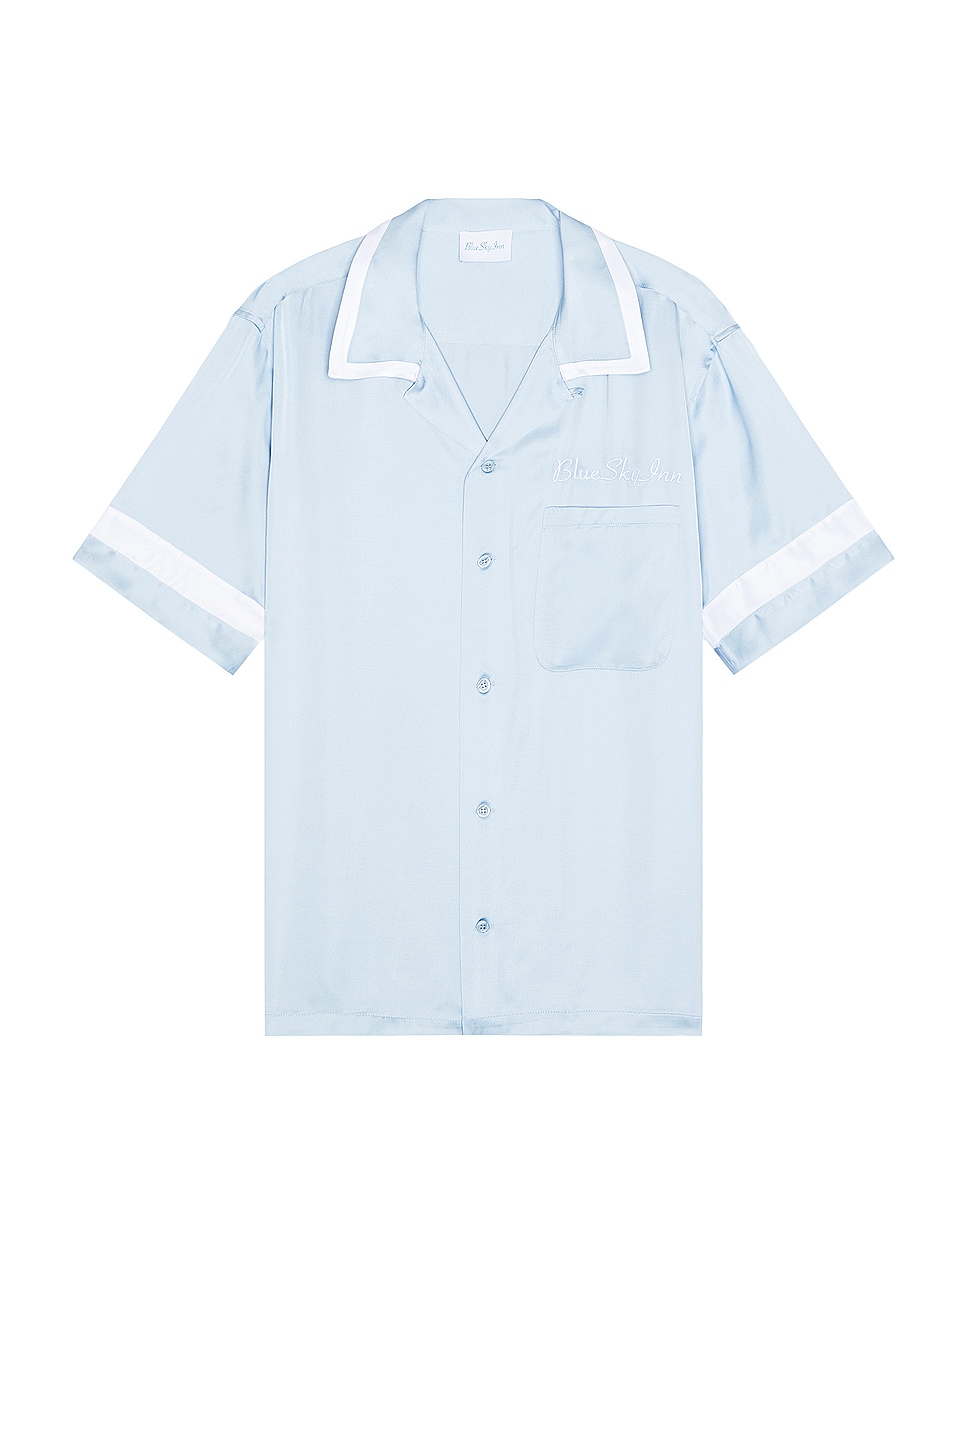 Image 1 of Blue Sky Inn Waiter Shirt in Baby Blue